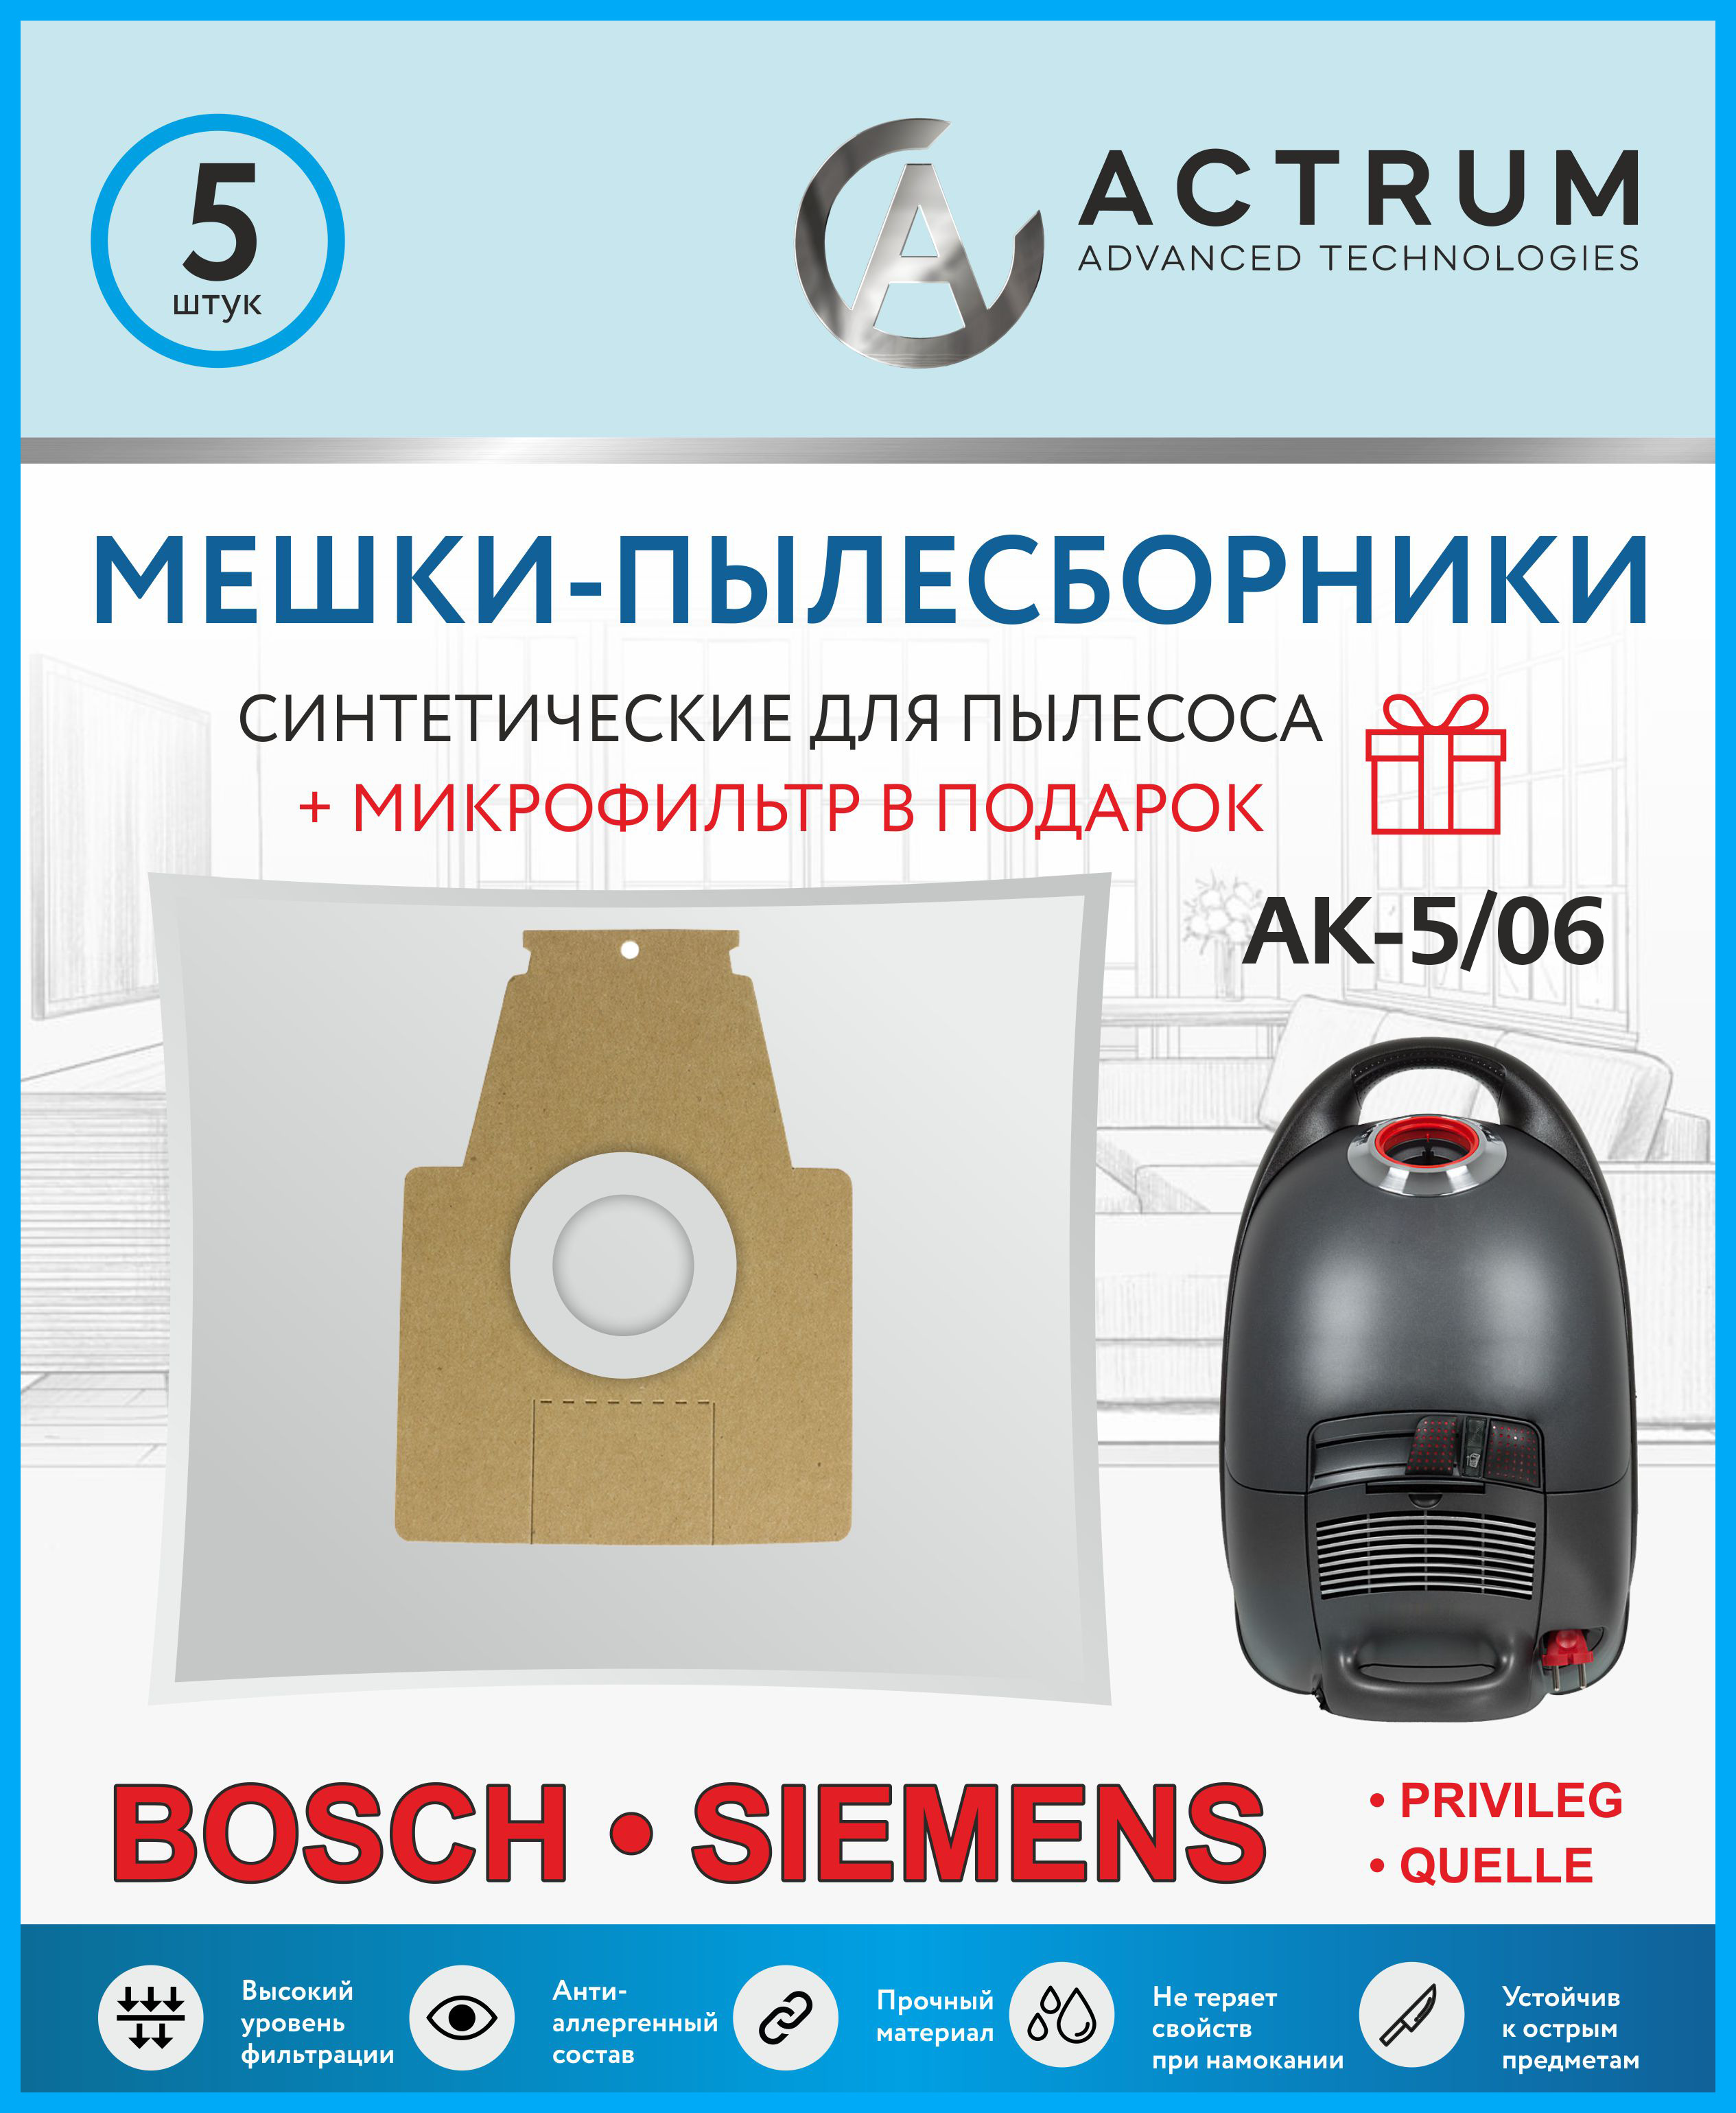 Пылесборник ACTRUM AK-5/06 пылесборник для zelmer actrum ak 5 53 5 шт